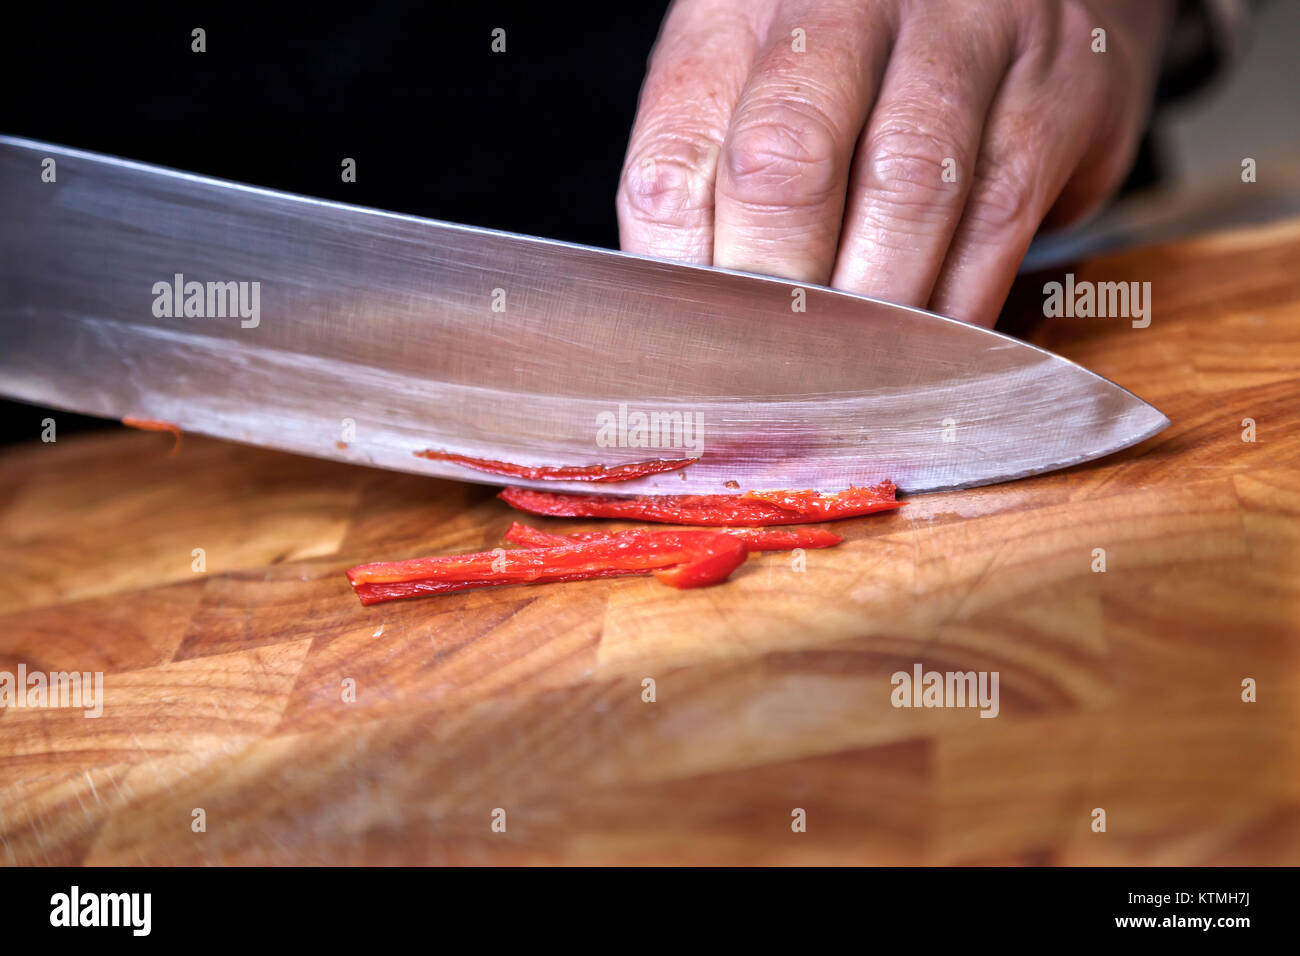 La préparation des aliments - grosse red chili sur planche à découper Banque D'Images